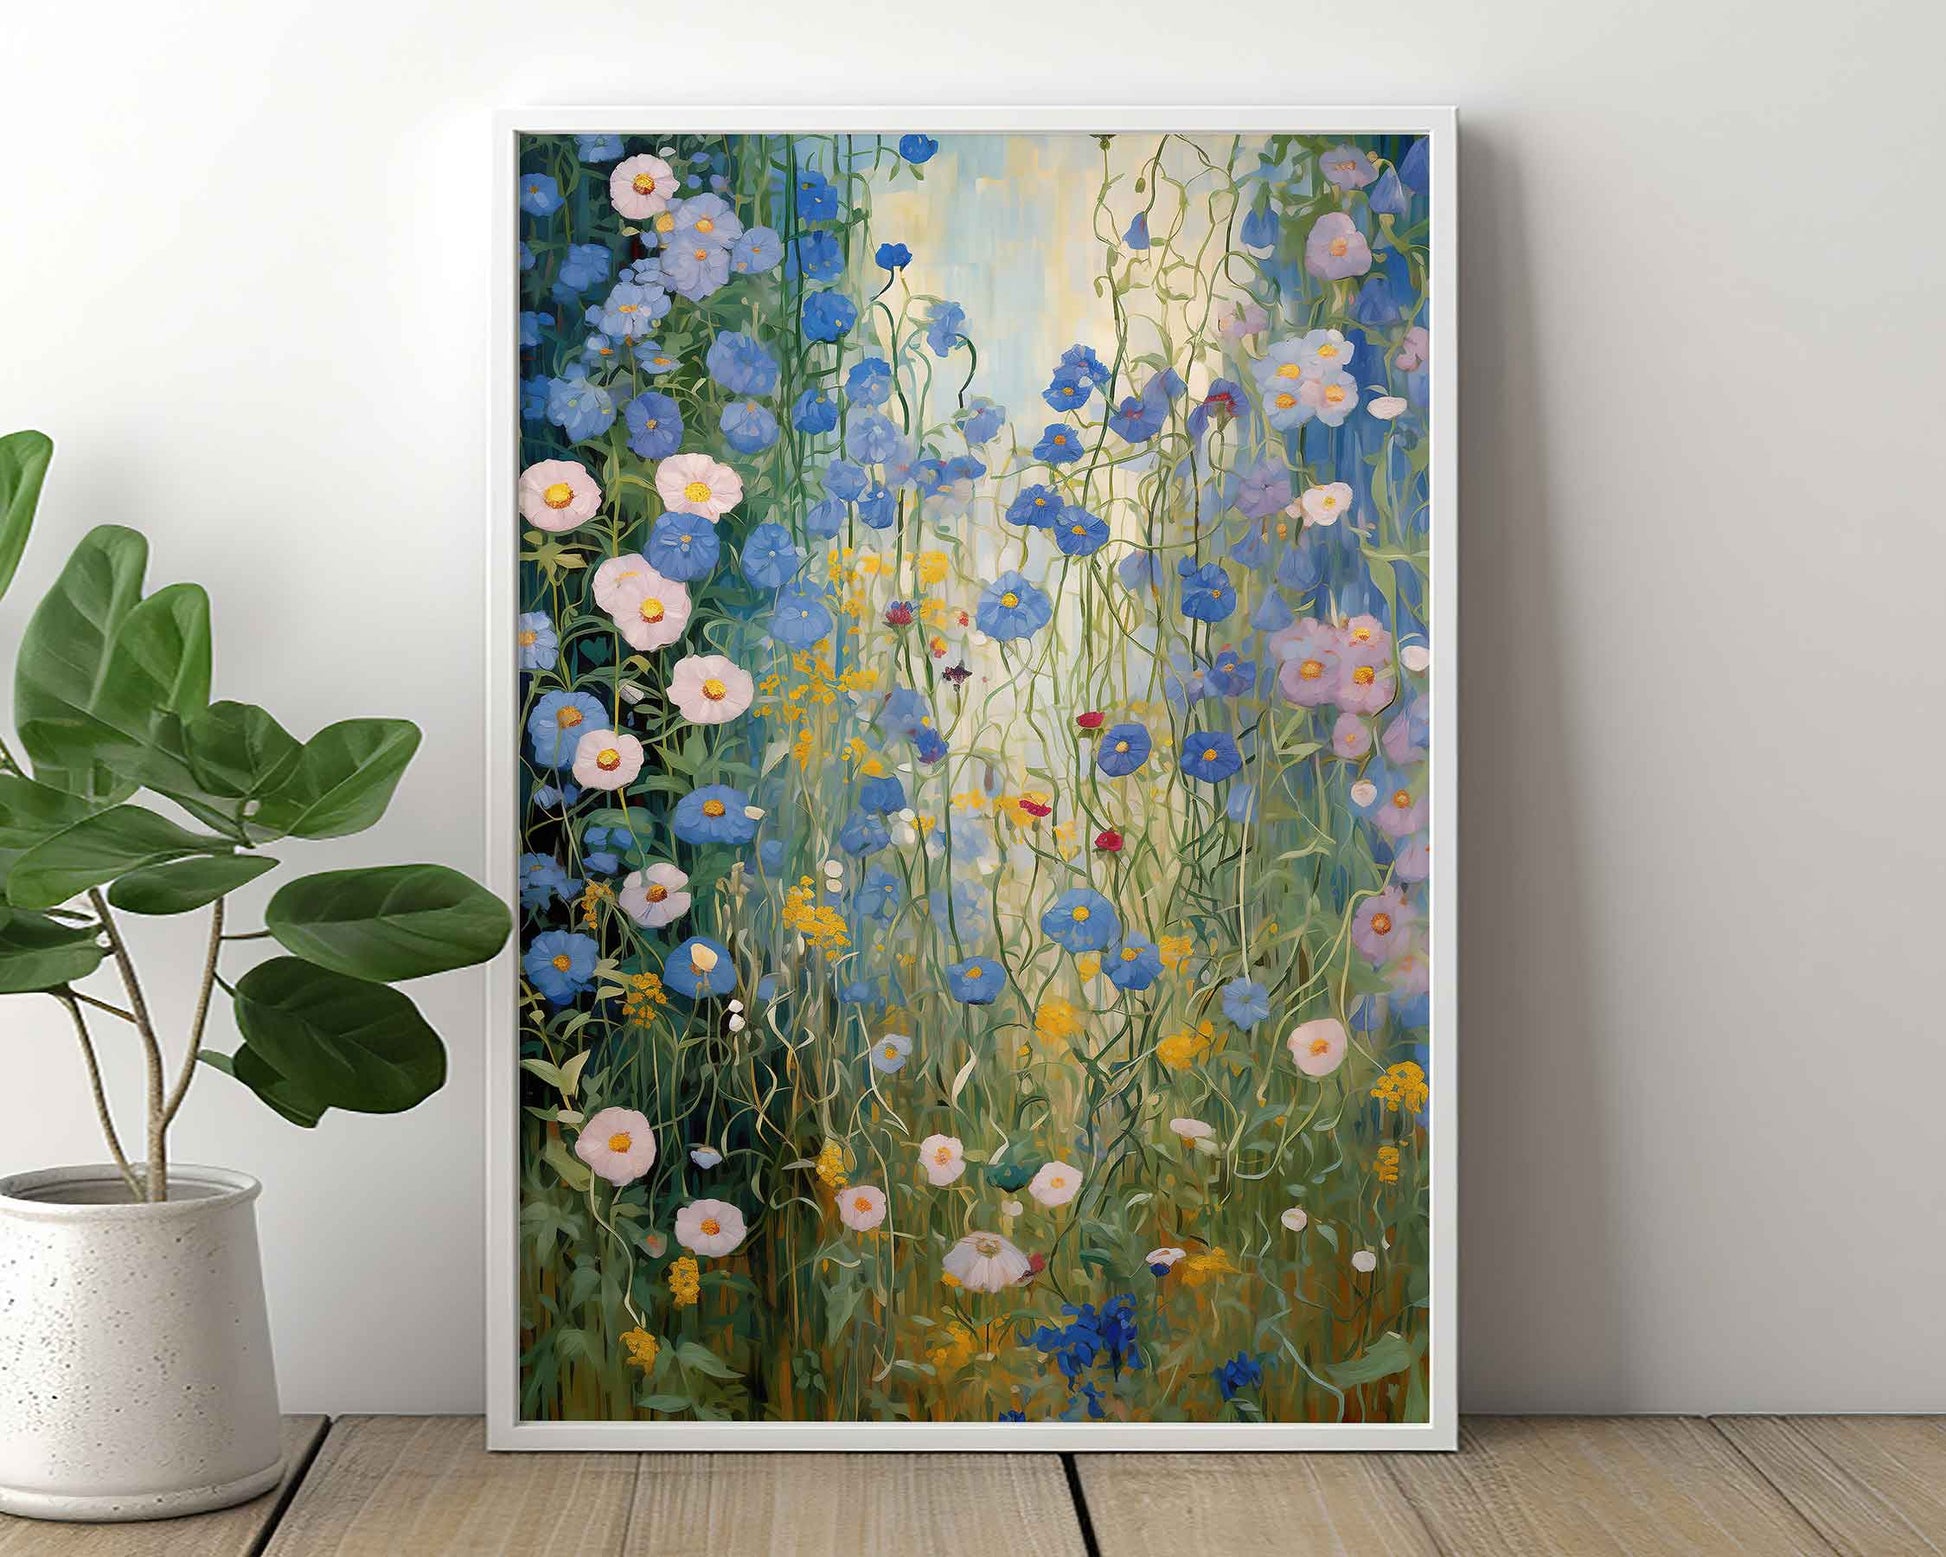 Framed Image of Gustav Klimt Style Blue and White Flowers Wall Art Print Poster